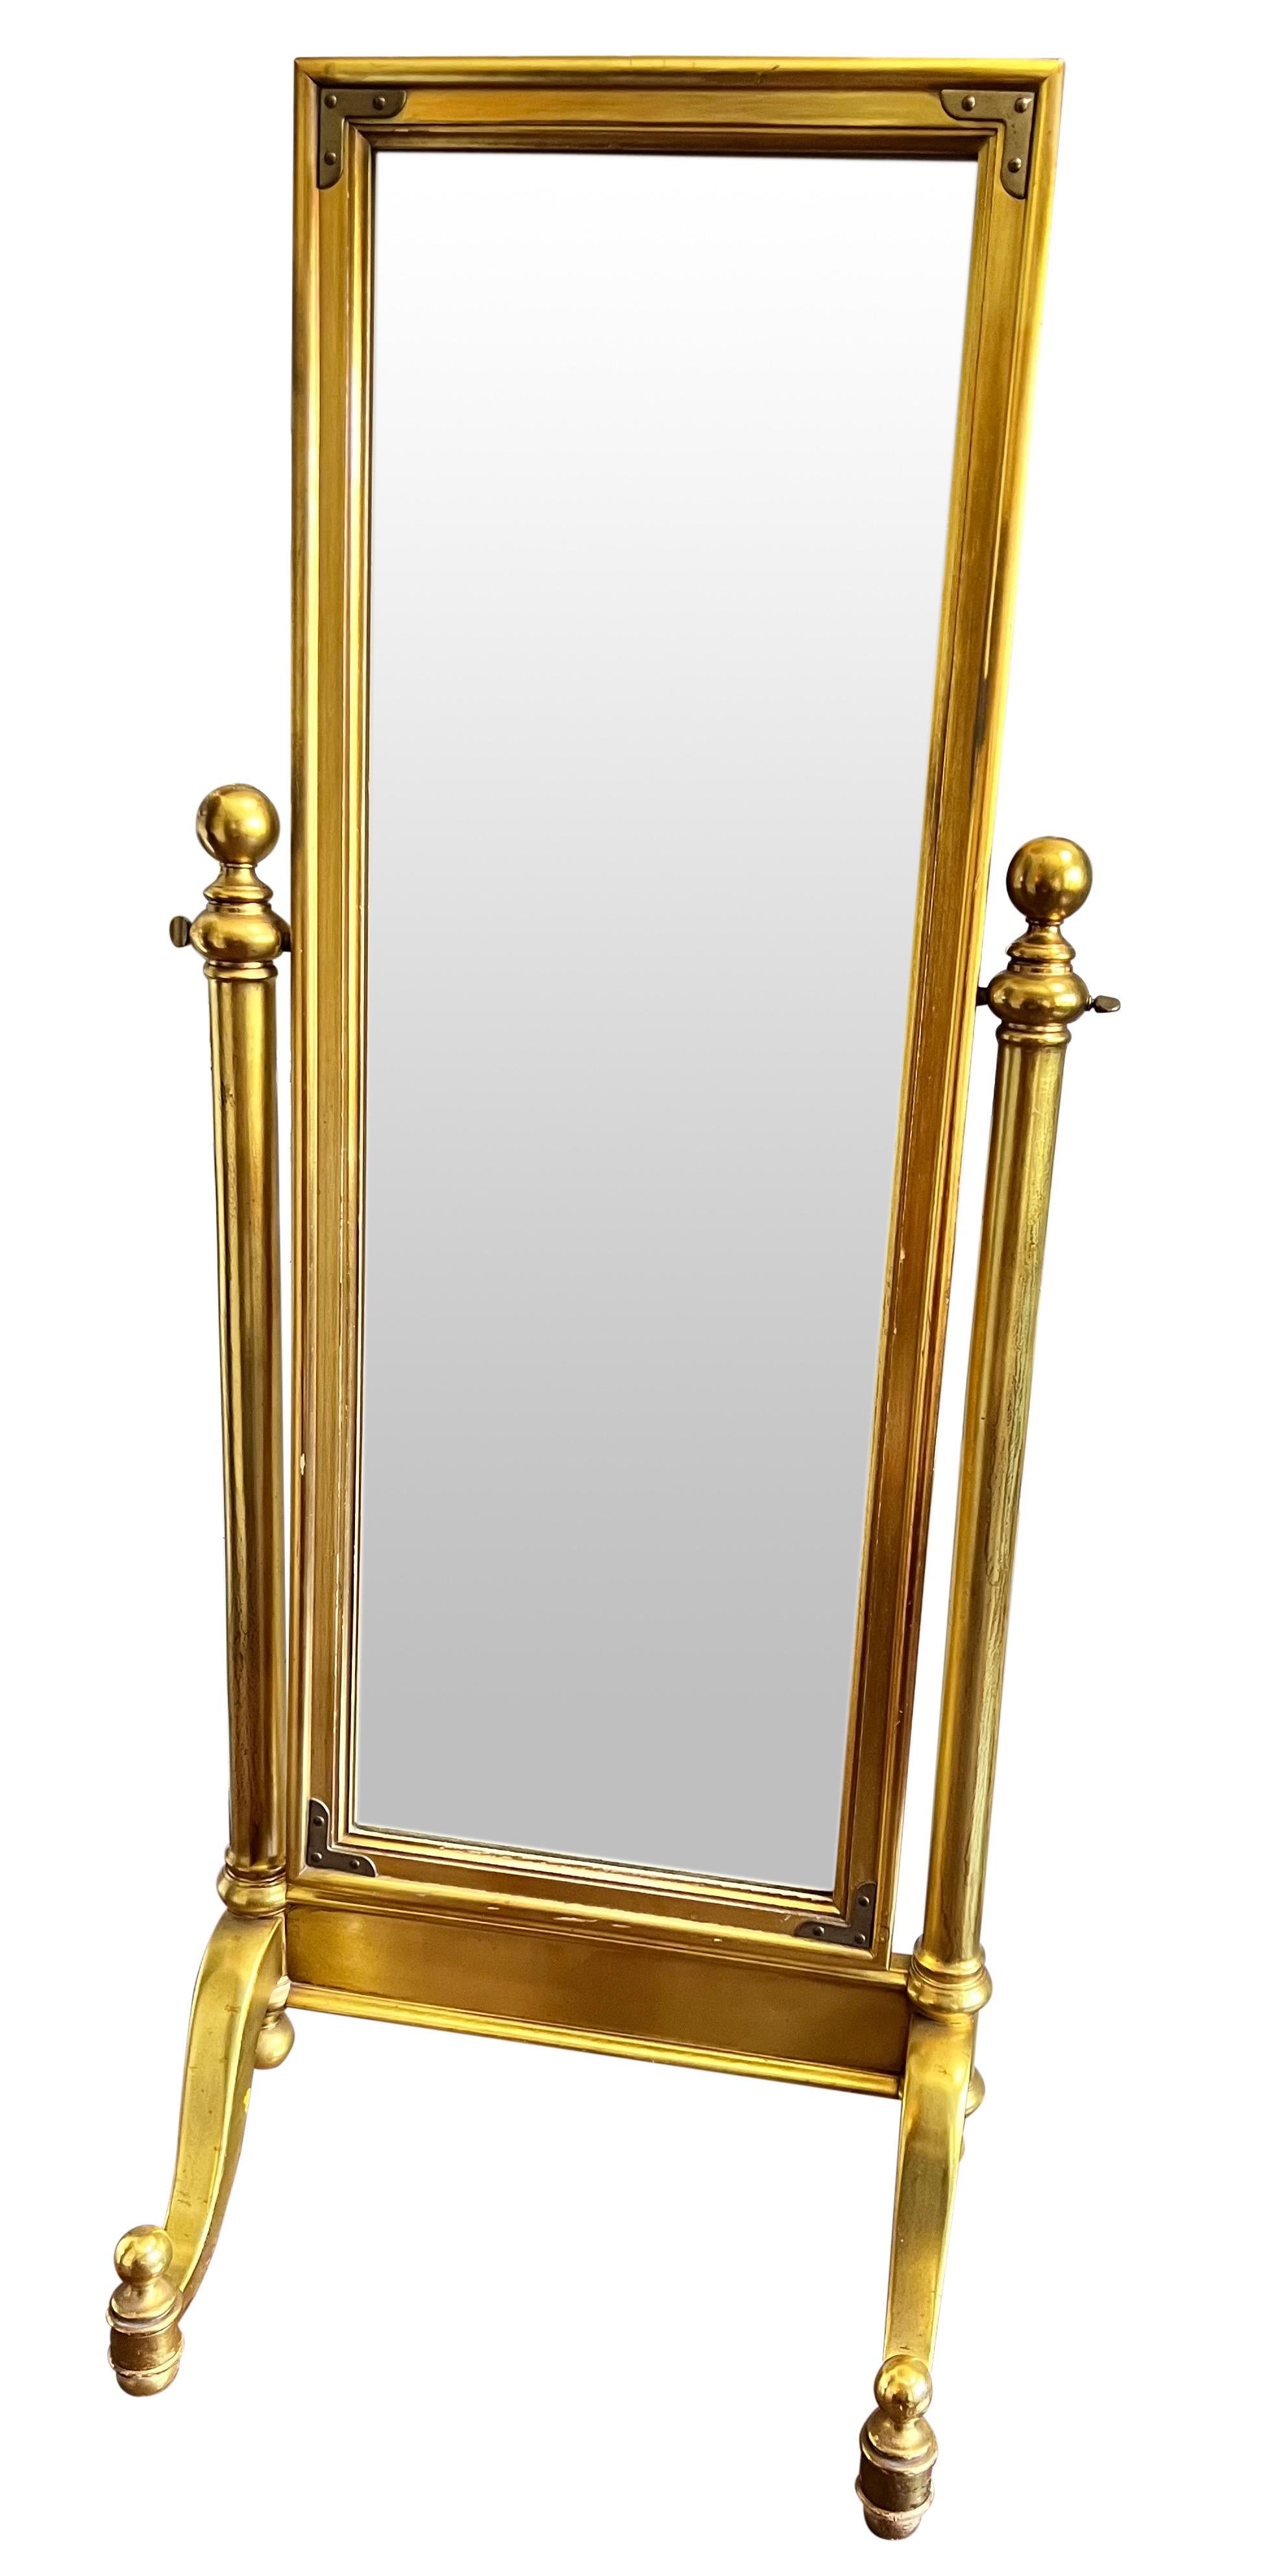 Fabulous 1970's vergoldet Cheval Spiegel. Der robuste und gut verarbeitete Spiegel steht auf einem zierlichen Sockel mit Kugelknäufen und Füßen. Er zeichnet sich durch feine Verzierungen mit dekorativen Messing-Ecken aus. Ein stattlicher und